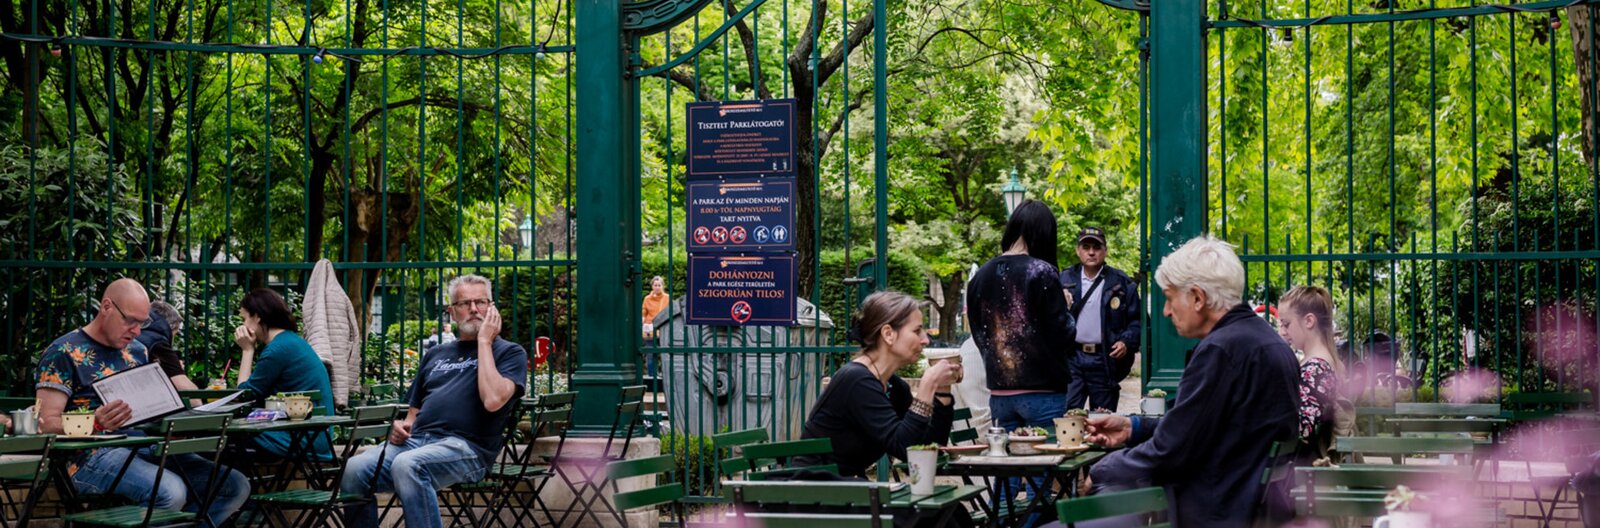 Budapest’s best garden bars and restaurants